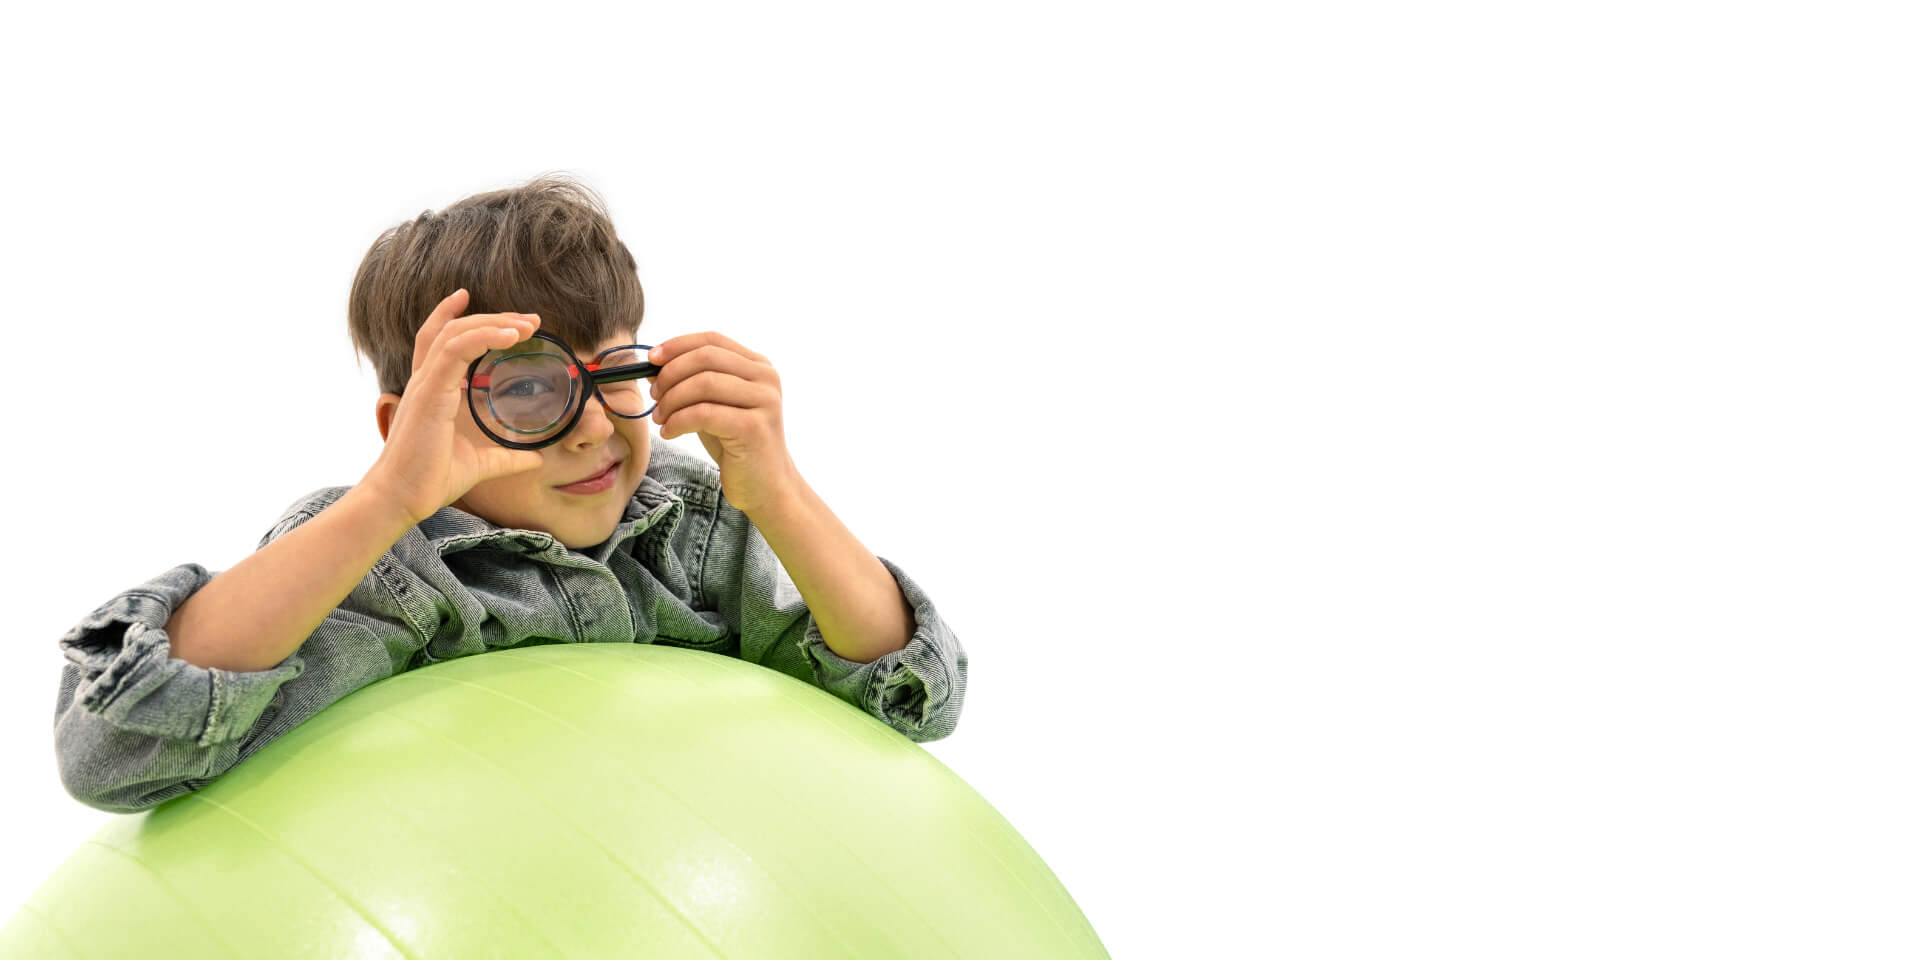 Een jongen met ZEISS brillenglazen voor myopie management leunt op een gymnastiekbal en houdt een vergrootglas voor één oog.